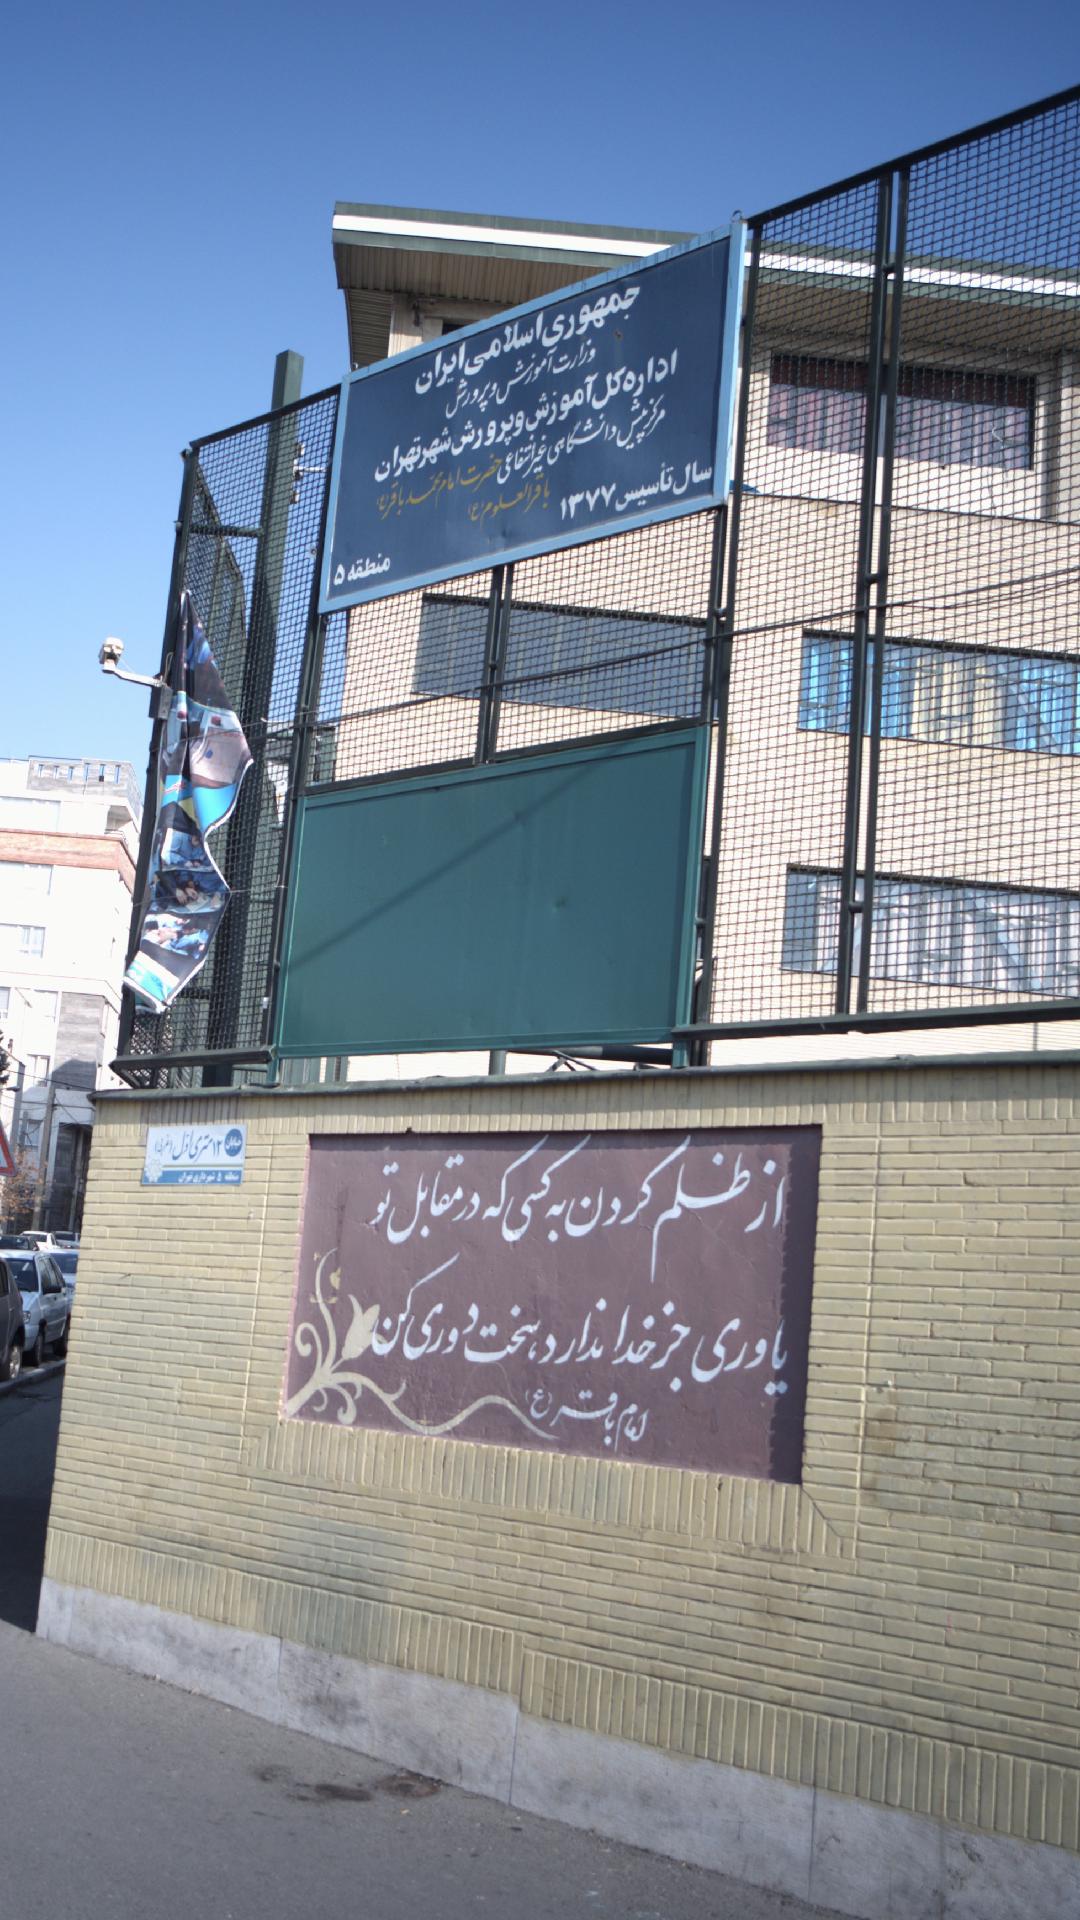 مرکز پیش دانشگاهی غیر انتفاعی حضرت امام محمد باقر(ع)باقرالعلوم